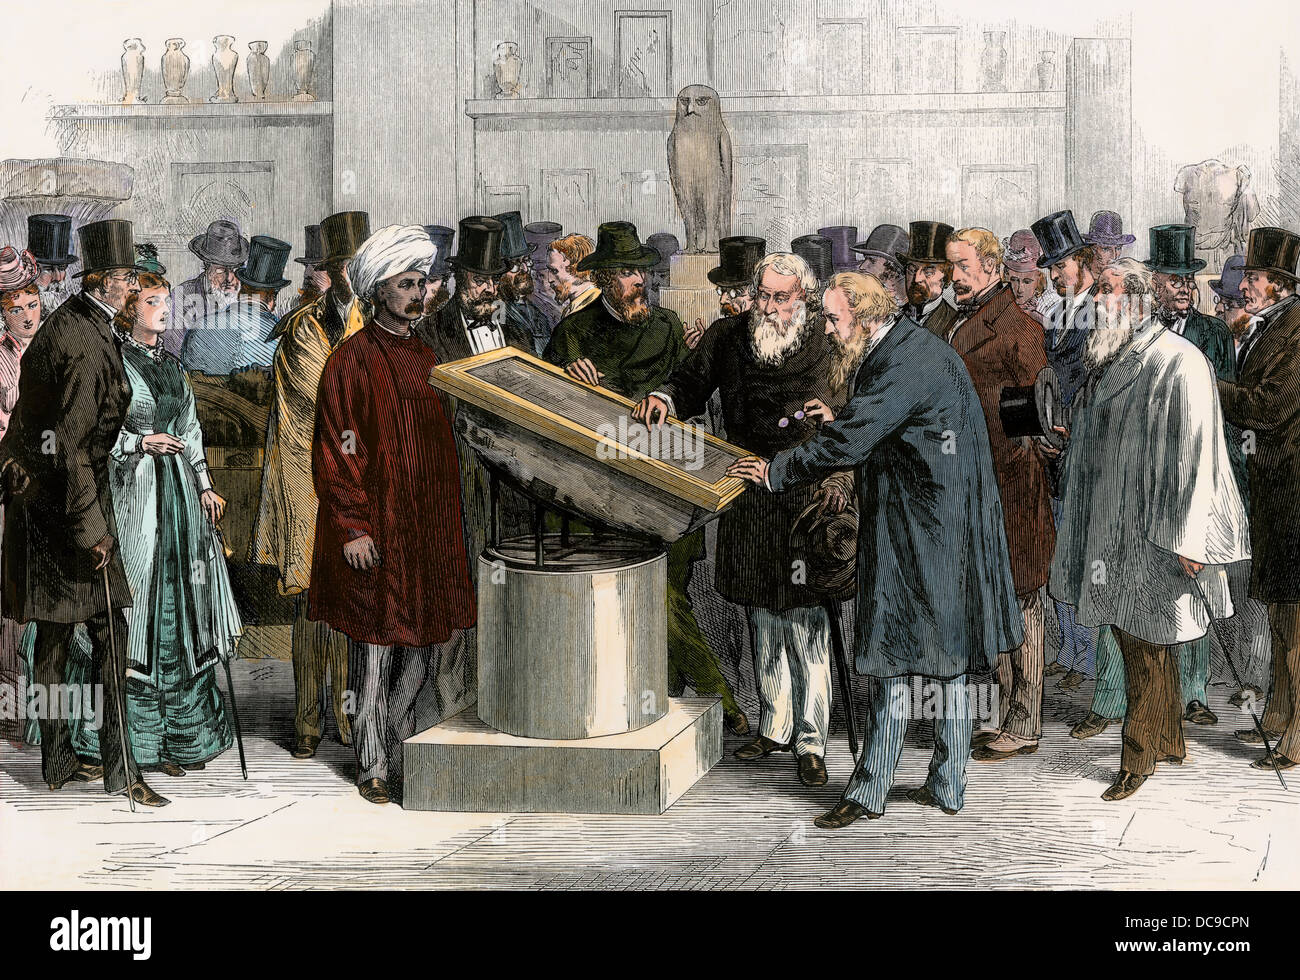 La foule l'examen de la pierre de Rosette exposée au British Museum, 1874. À la main, gravure sur bois Banque D'Images